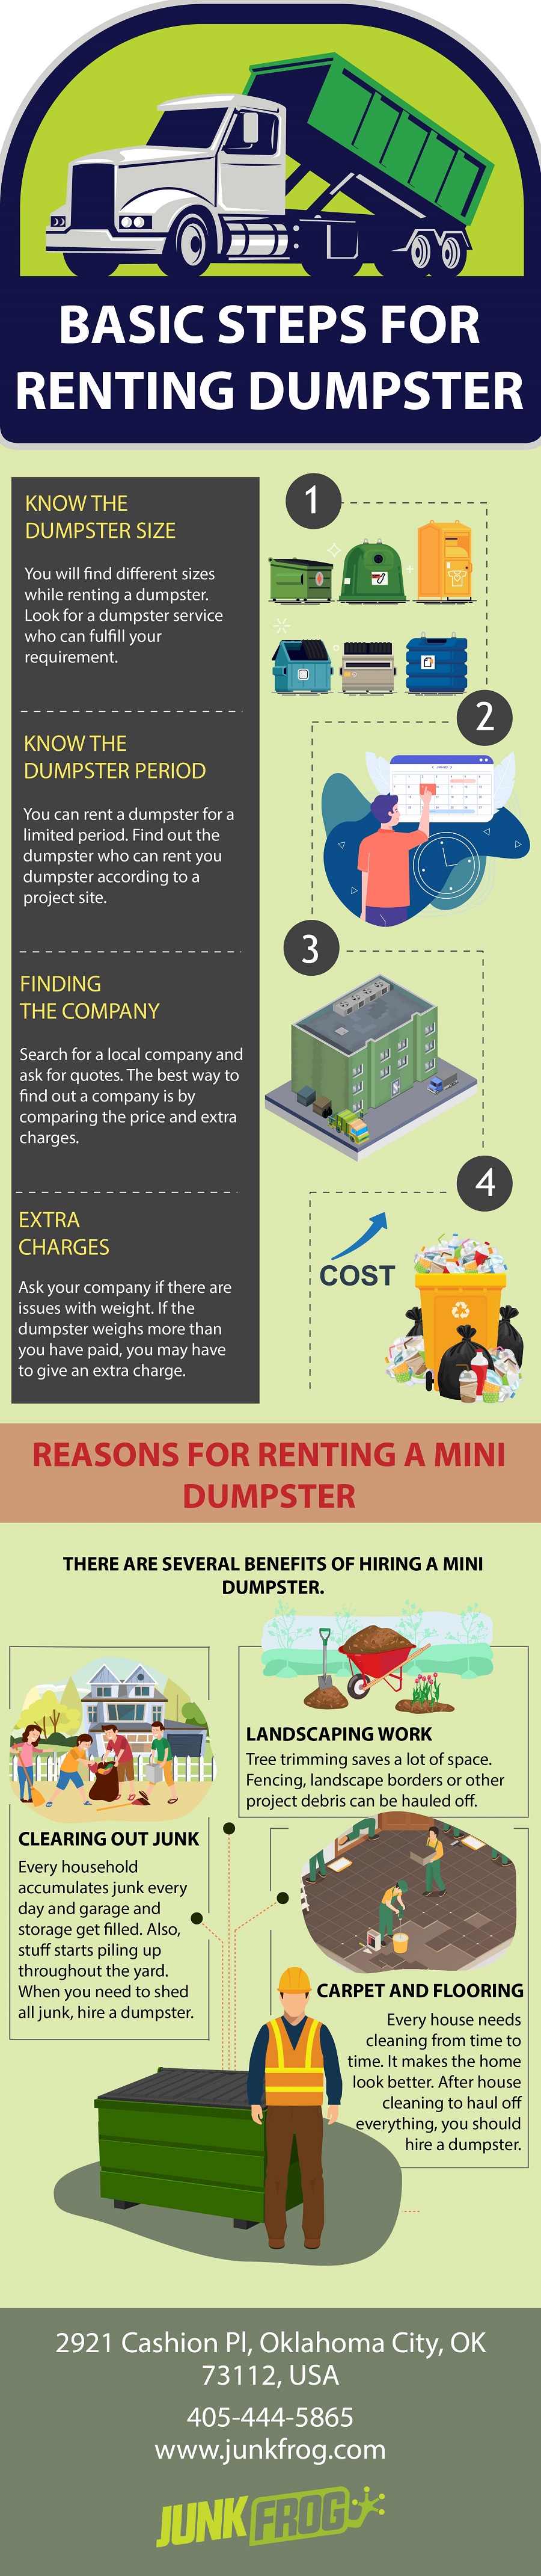 Basic Steps For Renting Dumpster.jpg